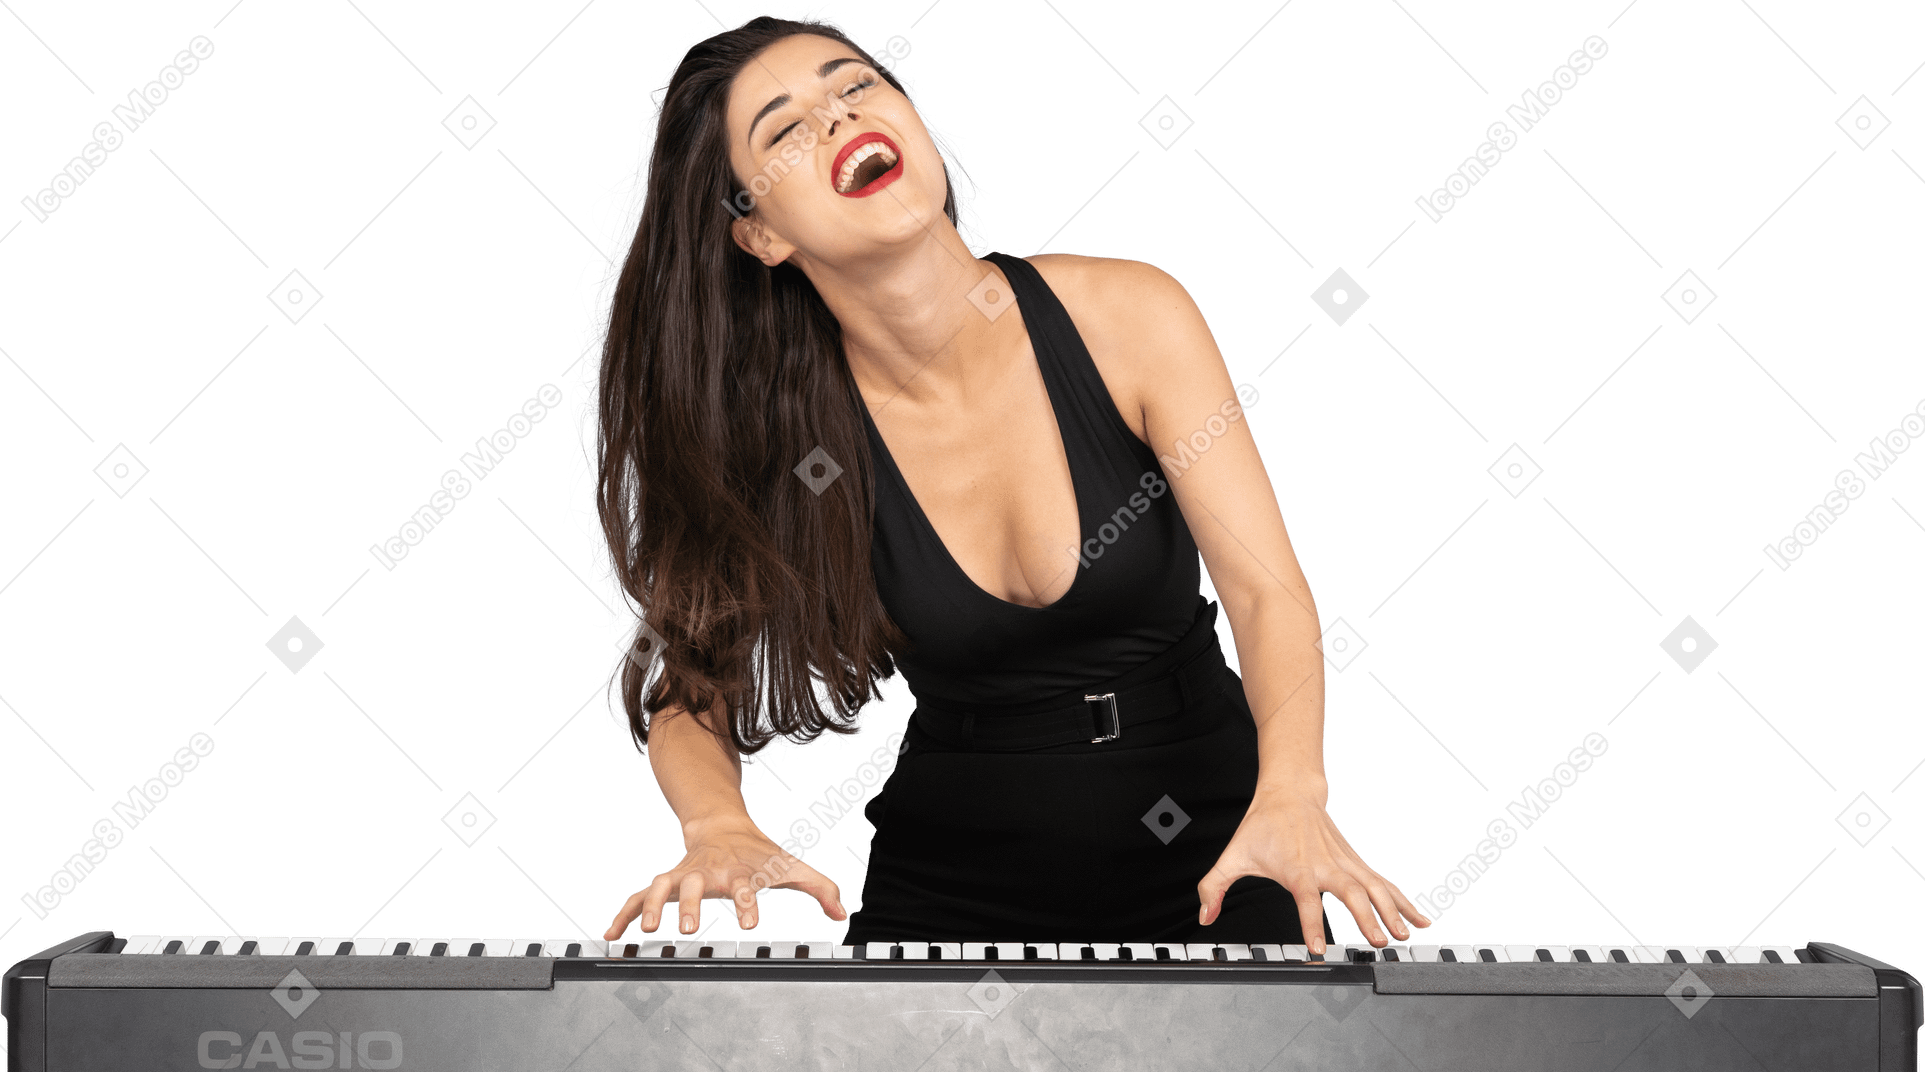 Vorderansicht einer erfreuten jungen dame im schwarzen kleid, die beim singen klavier spielt